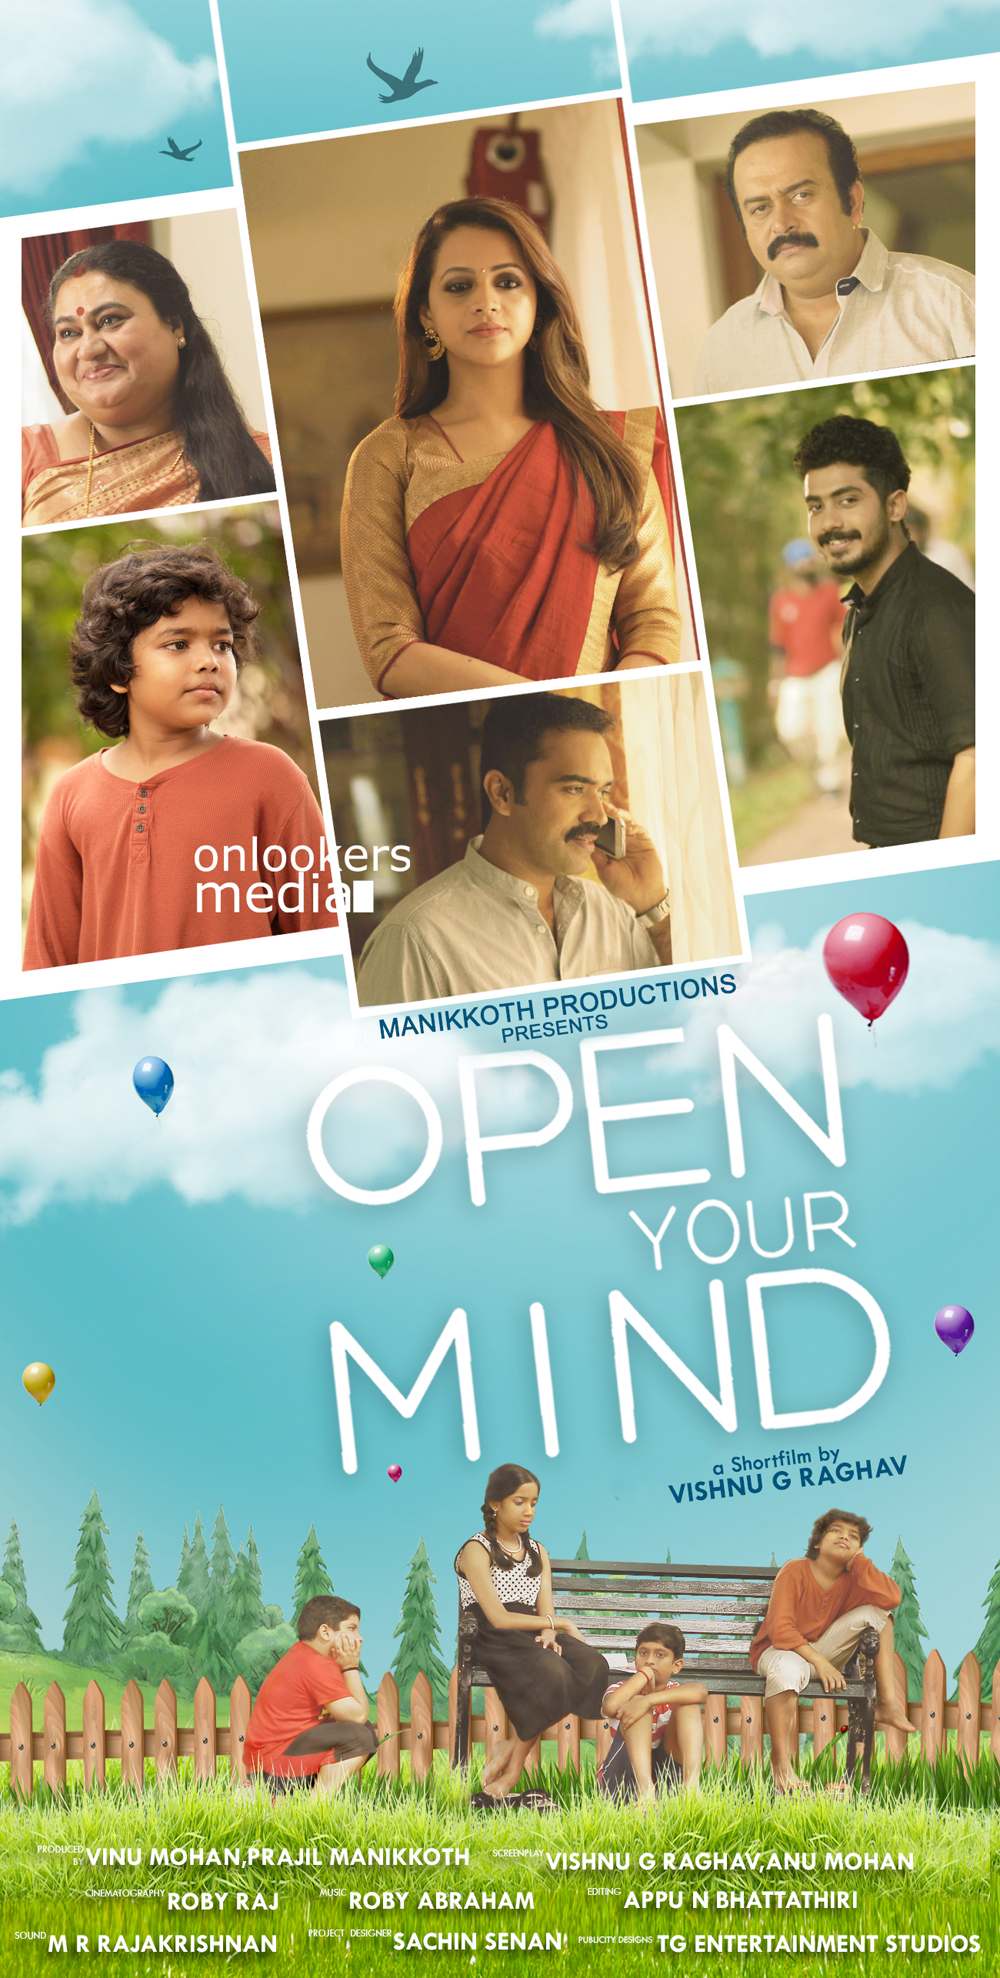 Open Your Mind Short Film-Bhavana-Onlookers Media (2)